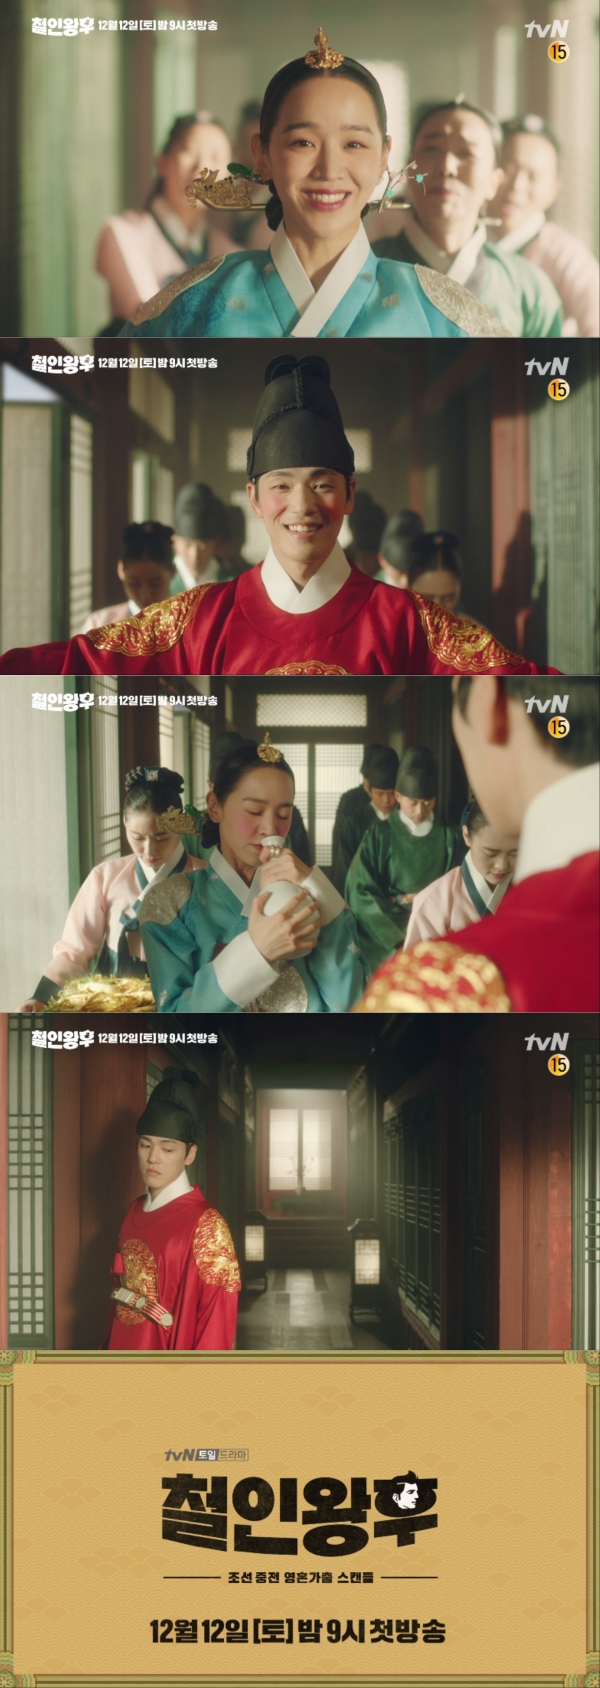 tvN ‘철인왕후’ 3차 티저 - 천생연분 편 영상